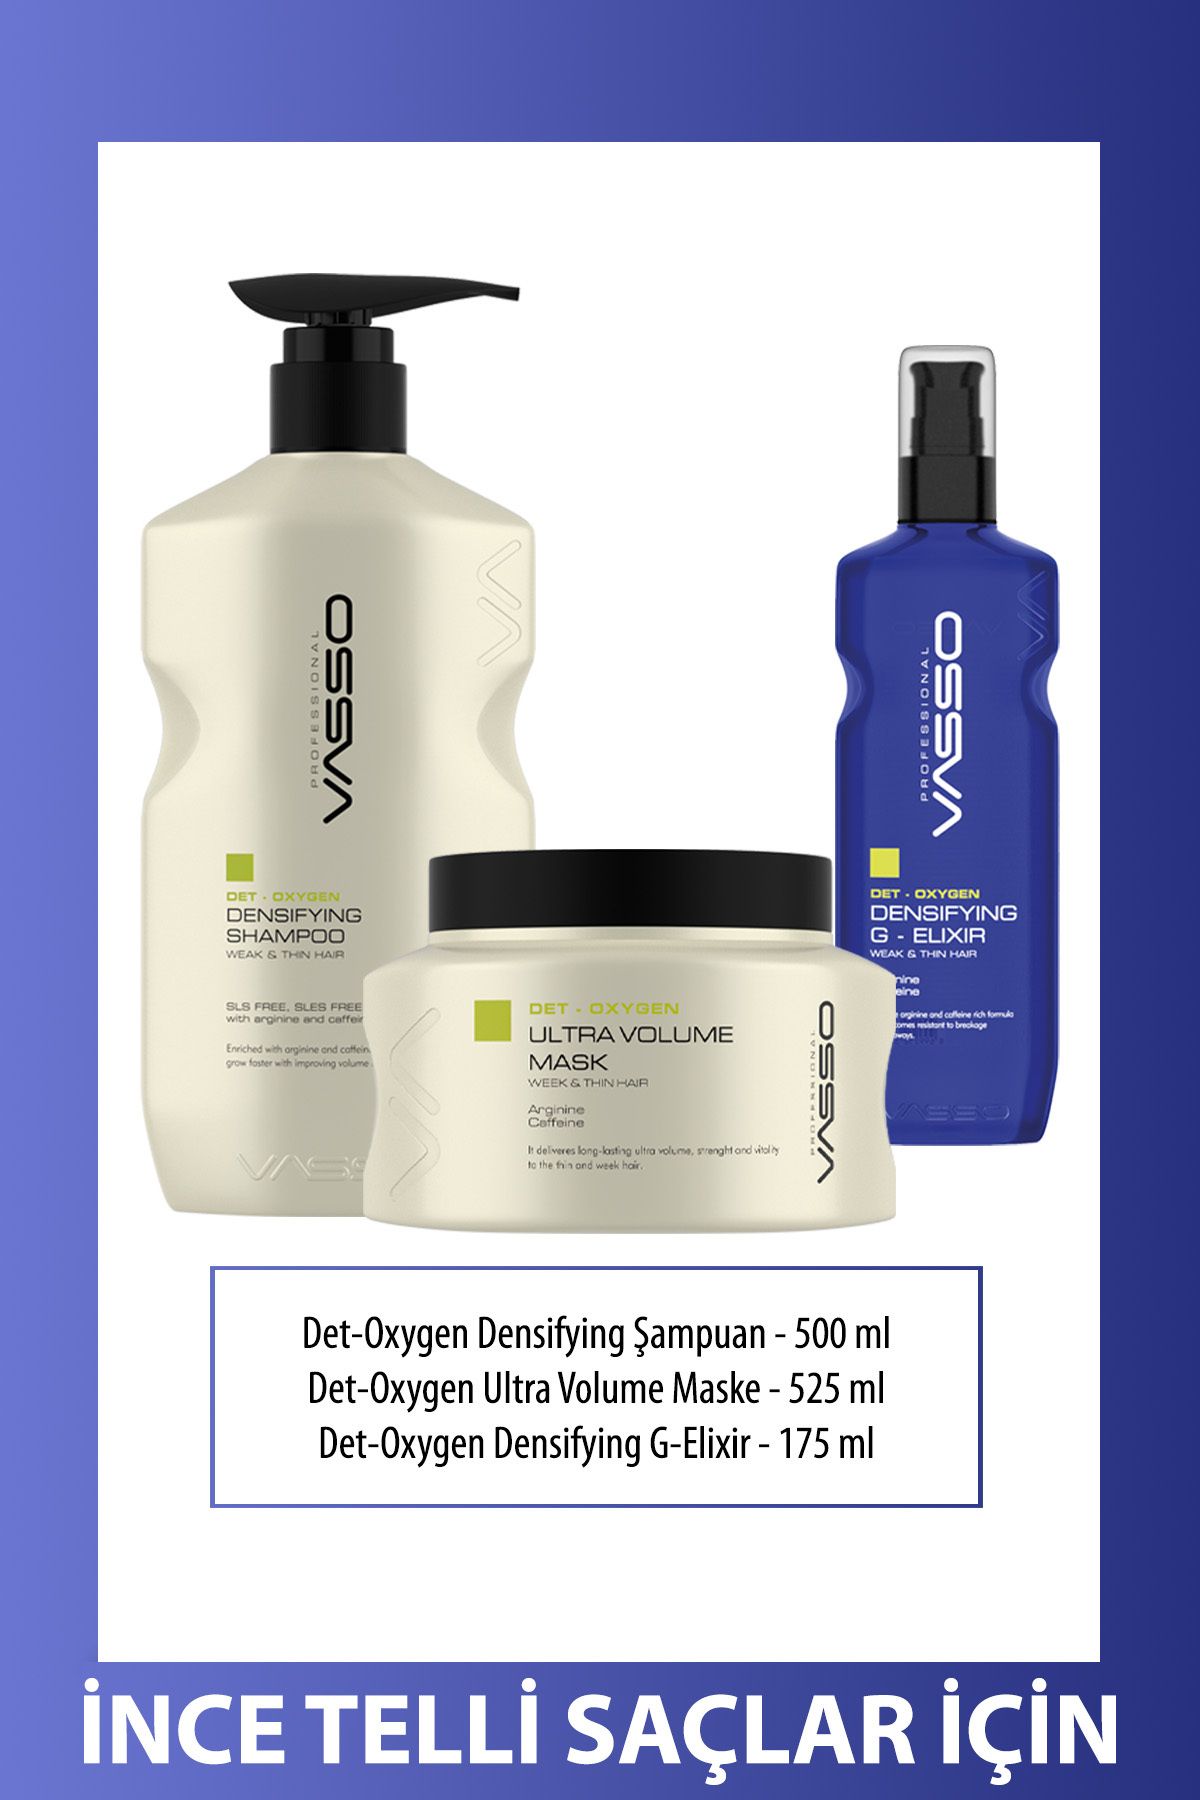 VASSO WOMEN Ince Ve Zayıf Telli Saçlar Için Sülfatsız Tuzsuz Güçlendirici Det-oxygen Serisi 3'lü Saç Bakım Seti